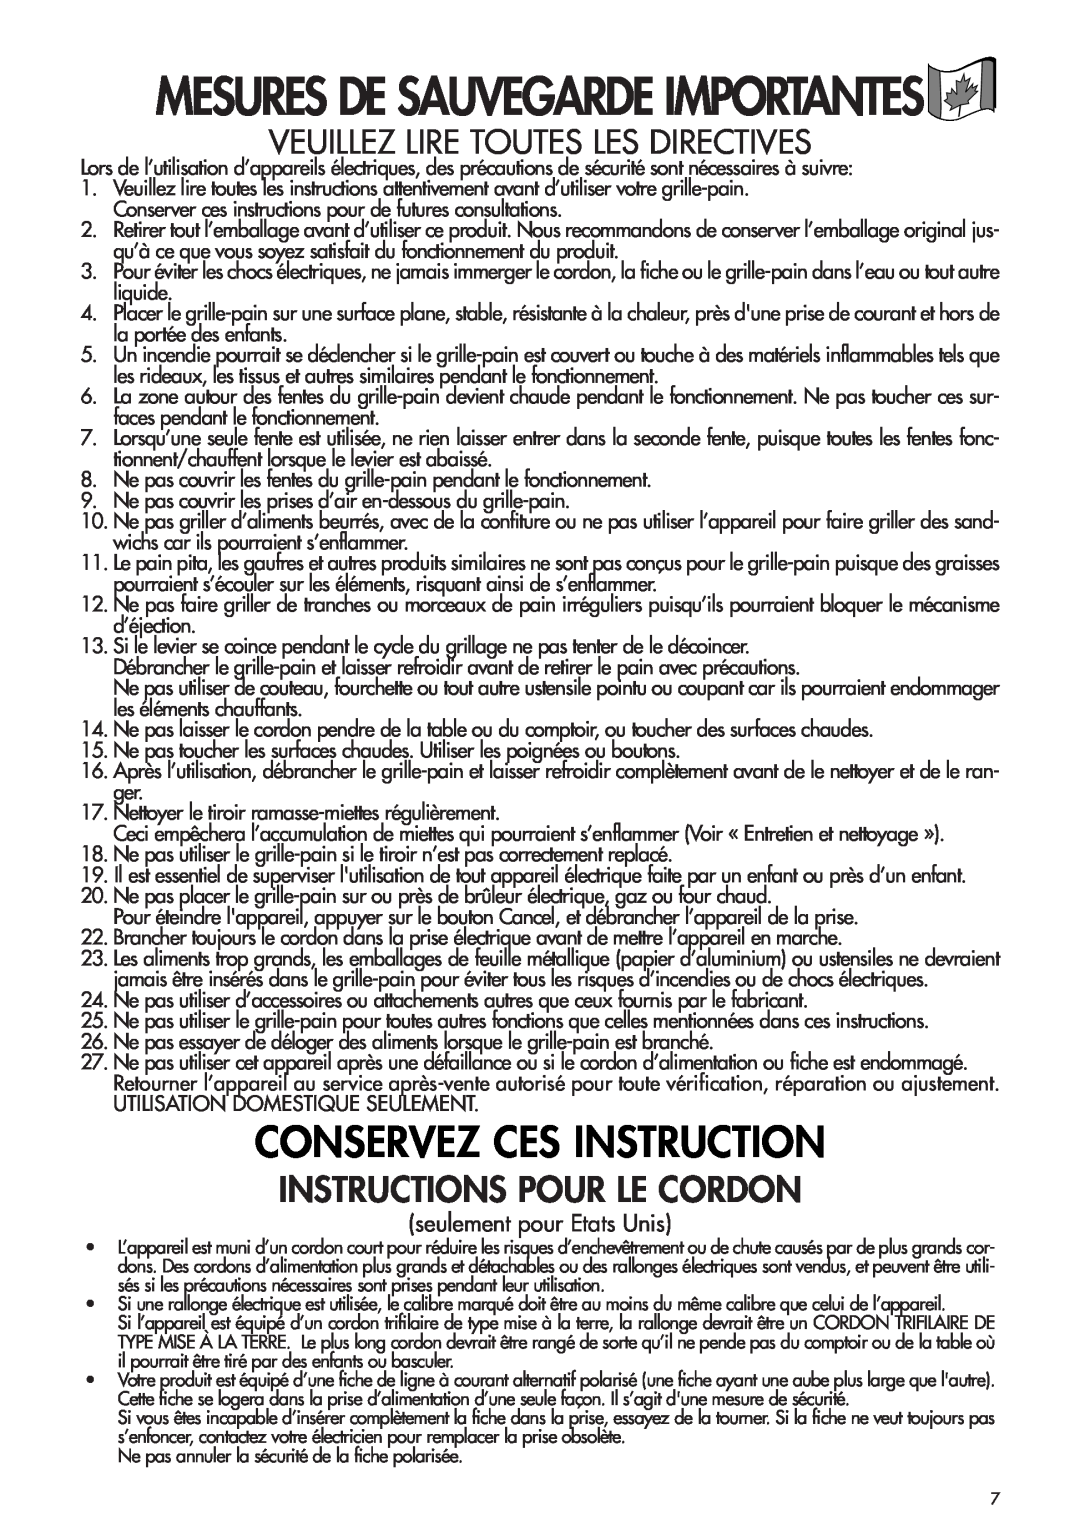 DeLonghi CTH2003B, CTH4003 Instructions Pour Le Cordon, Veuillez Lire Toutes Les Directives, Conservez Ces Instruction 